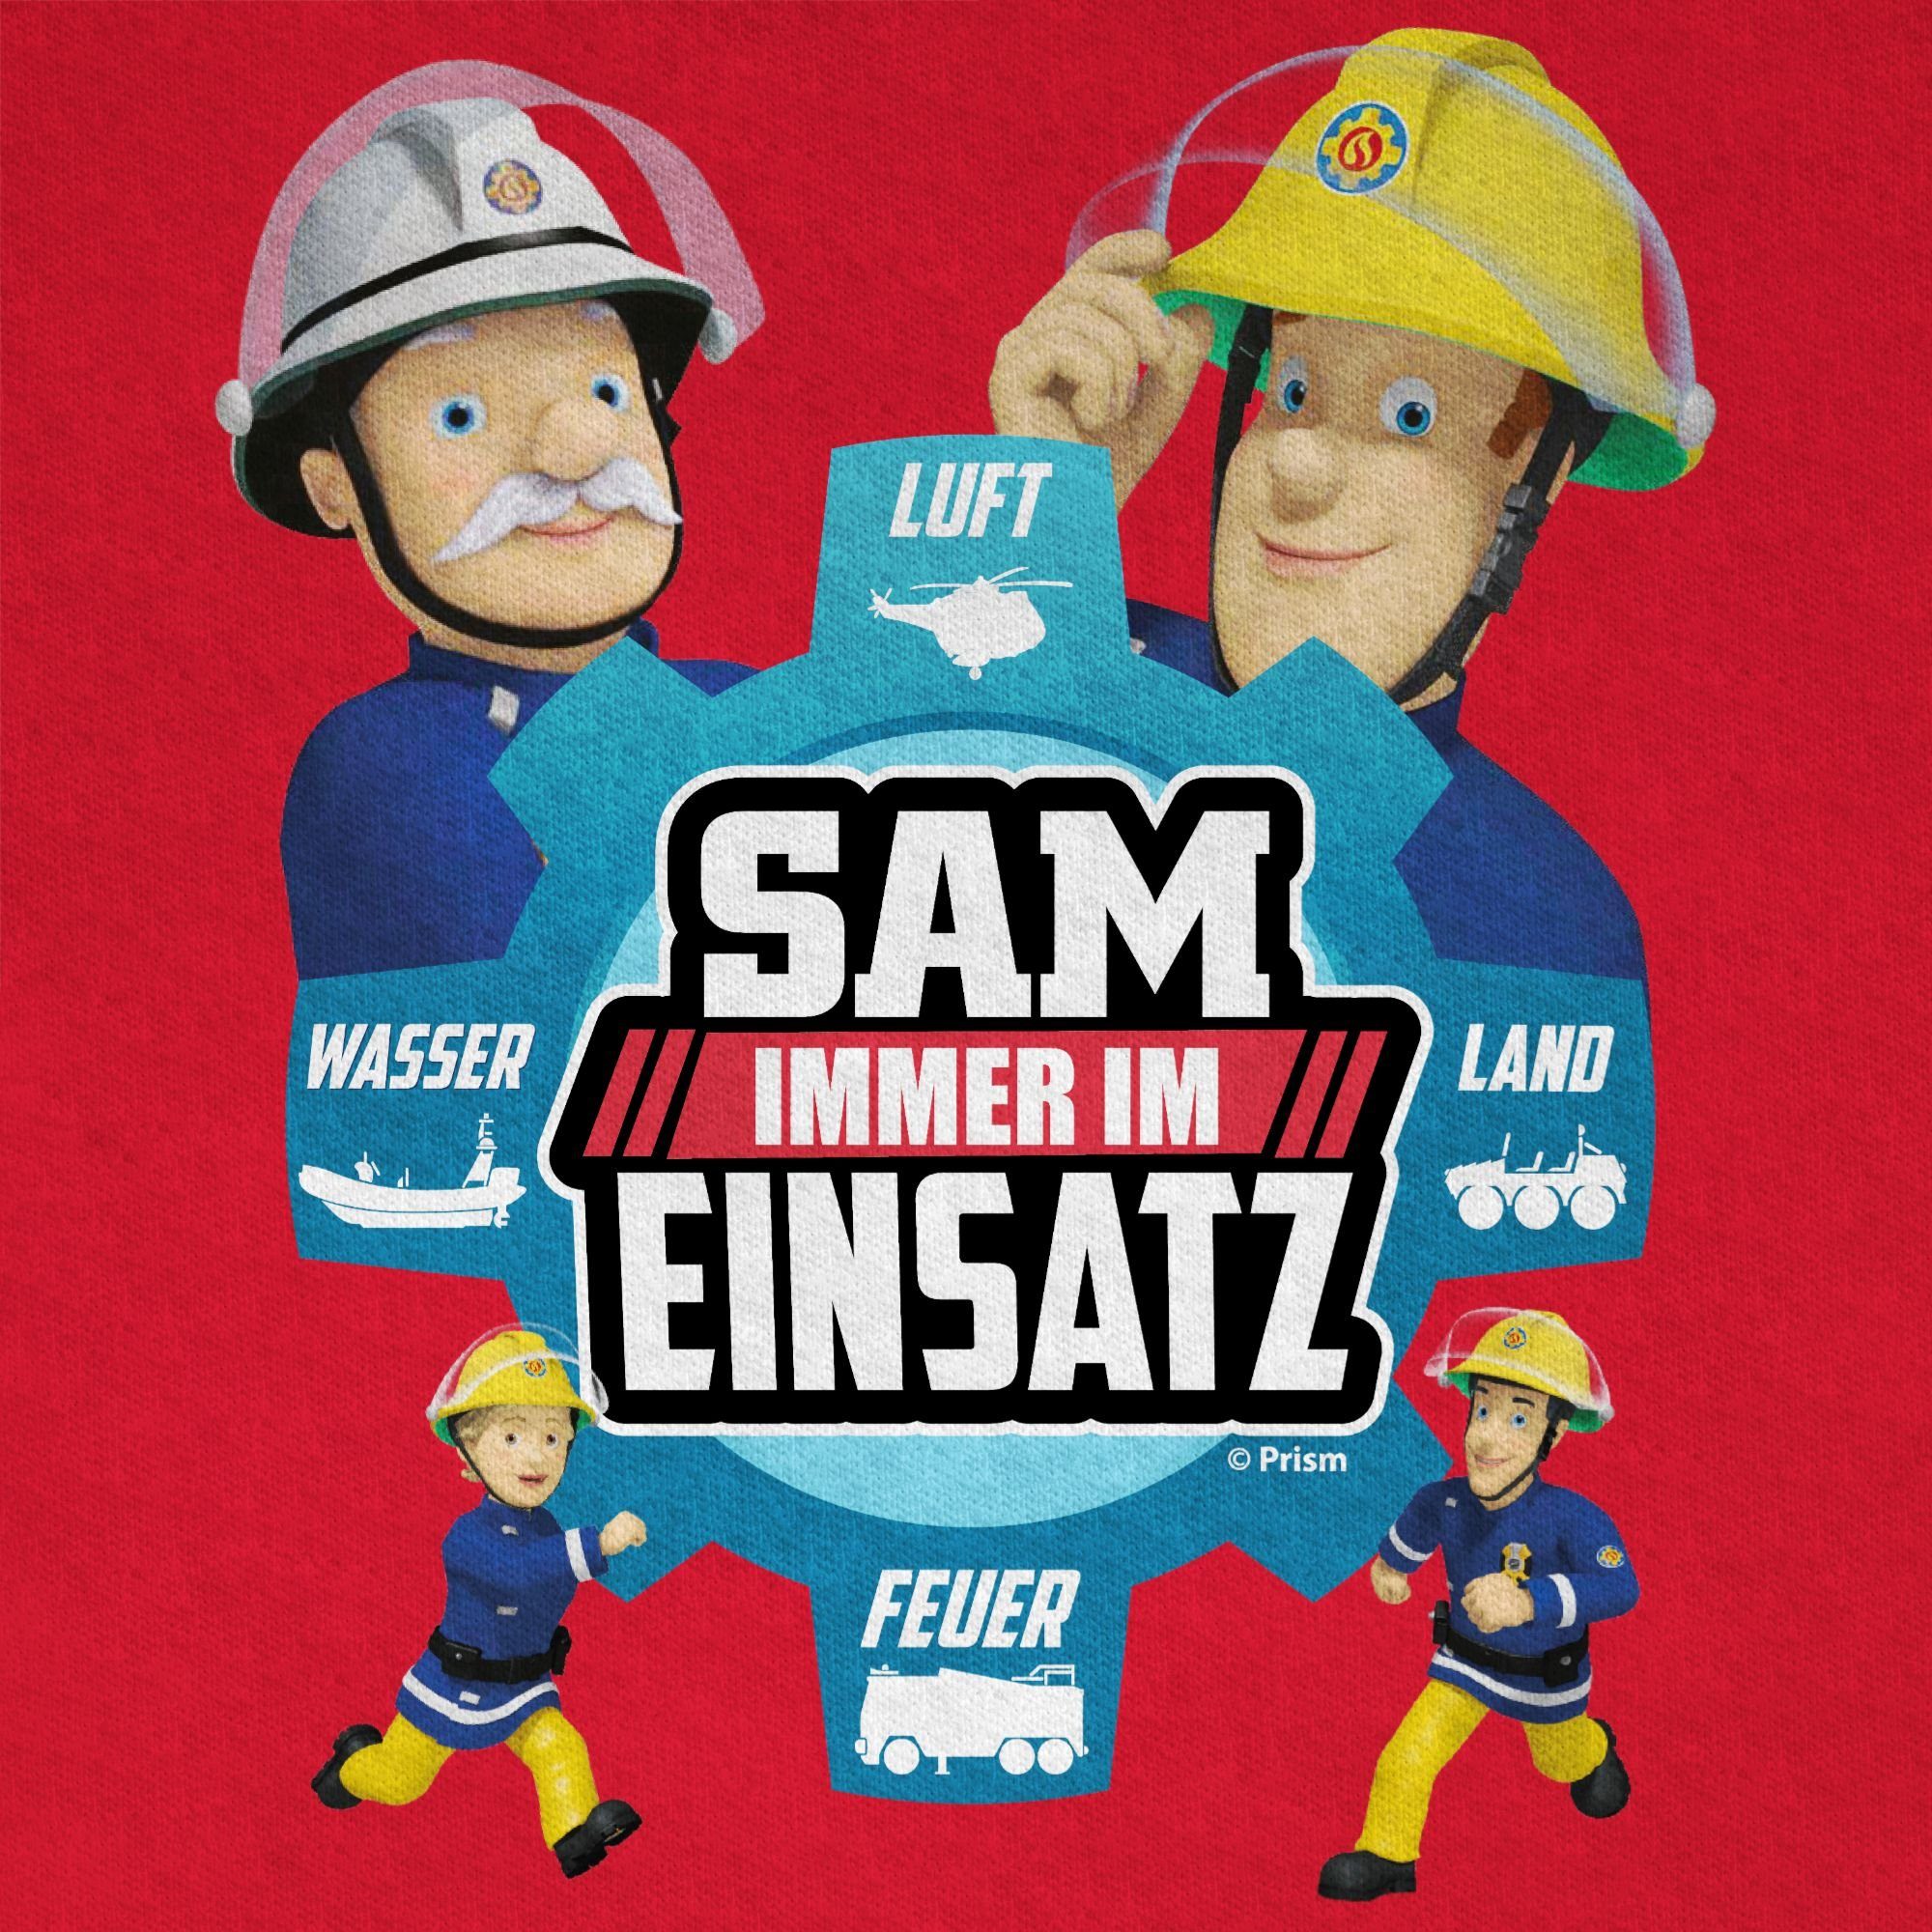 Shirtracer T-Shirt Sam Rot Sam Feuerwehrmann - Immer 01 Einsatz Jungen im